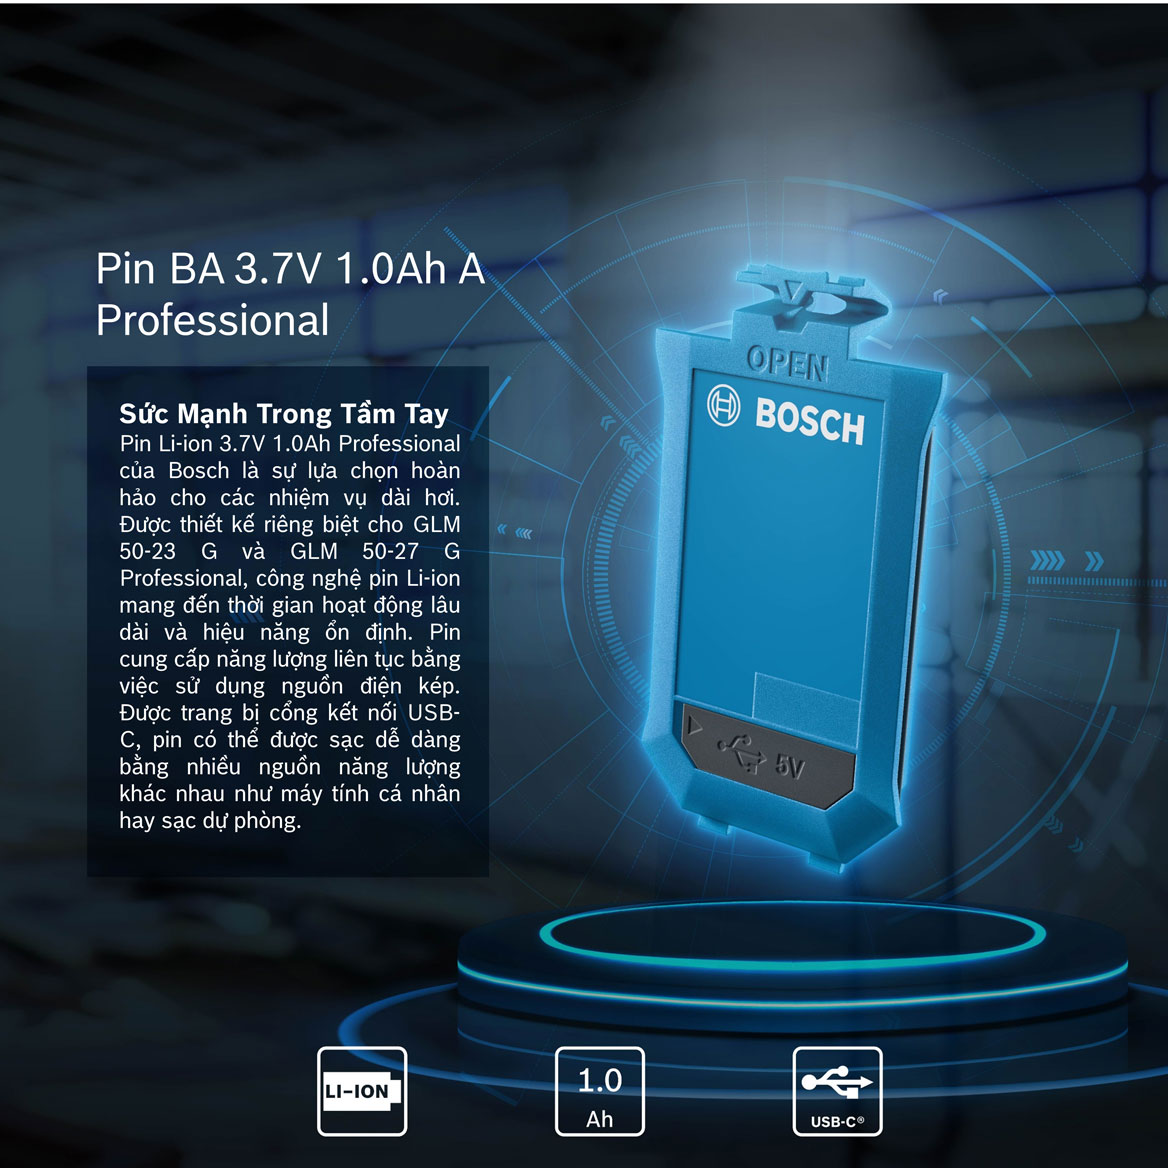 Pin máy đo khoảng cách Bosch BA 3.7 mang tới hiệu quả vượt trội trong công việc